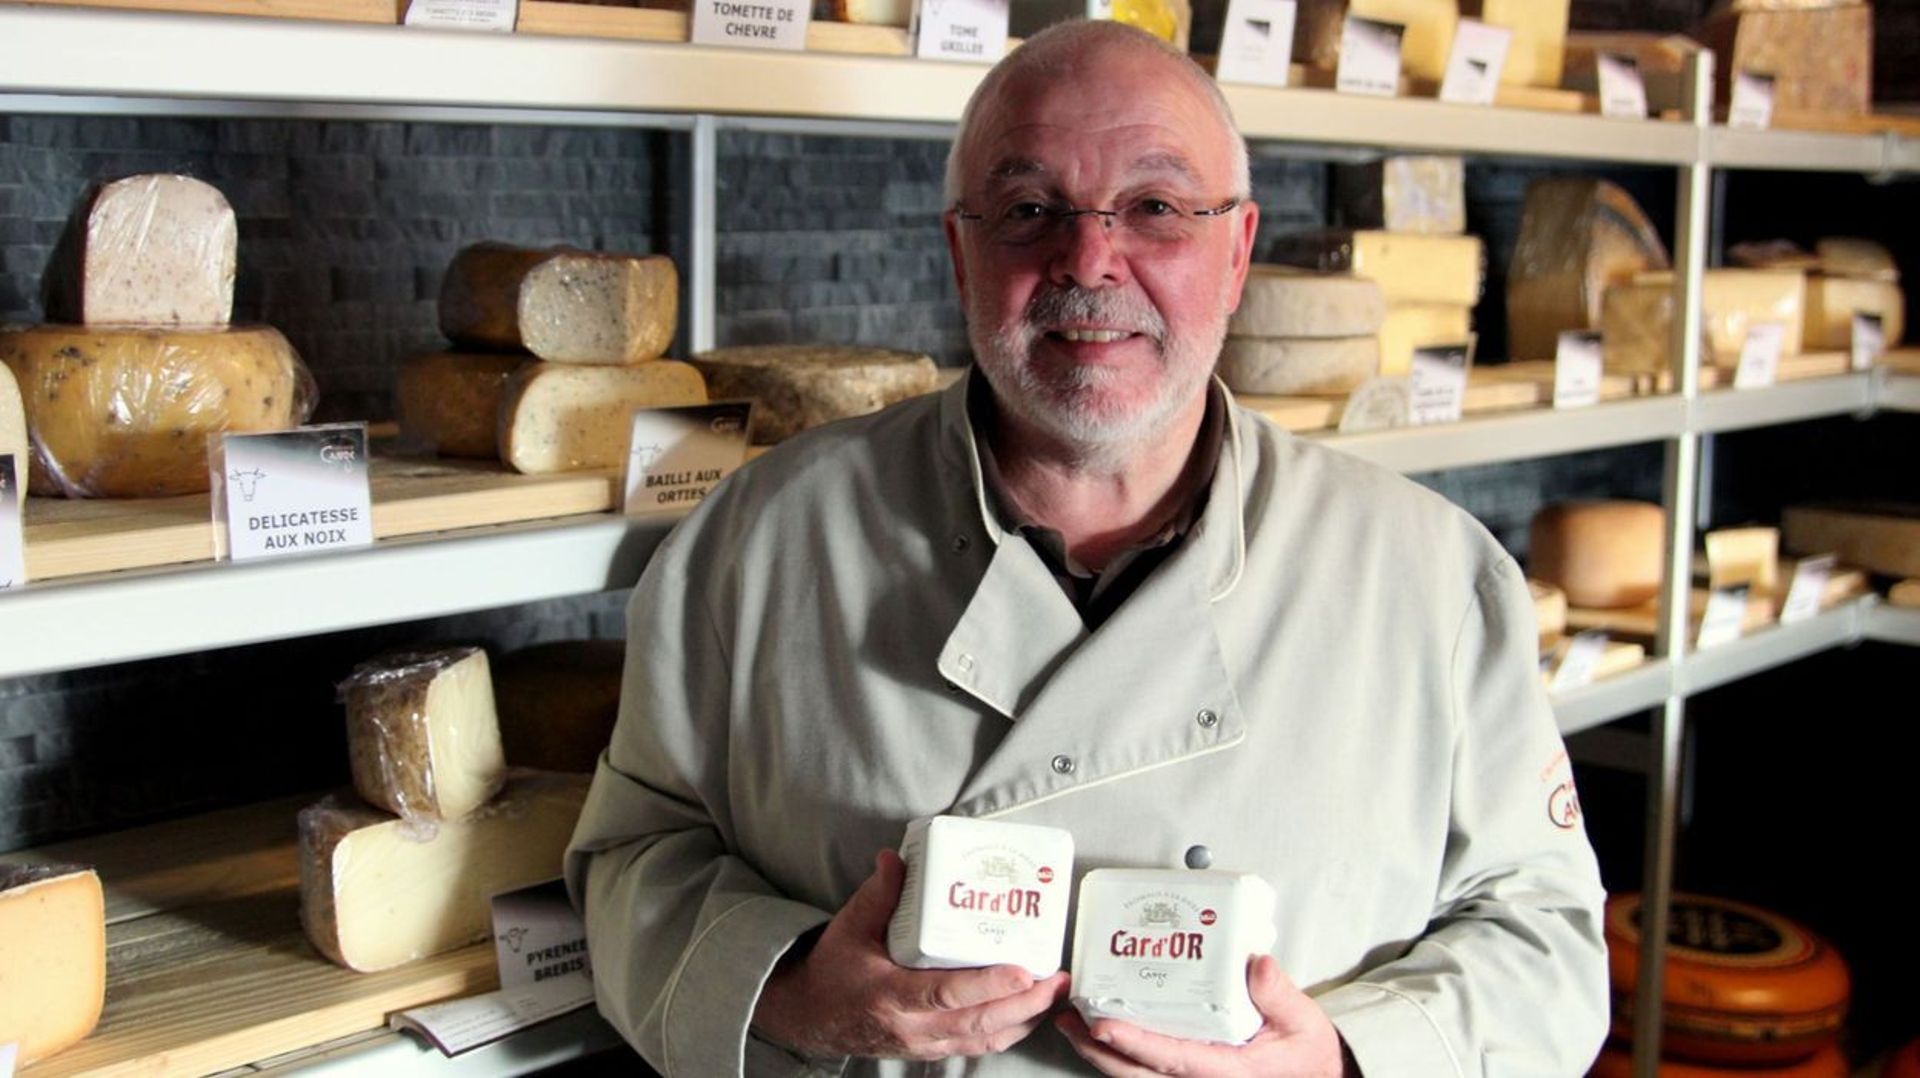 Jacquy Cange est artisan affineur de fromages depuis 30 ans. Il y a quelques mois, il a eu l’idée de créer un fromage à base de la bière « Car d’or » de la brasserie Saint-Feuillien.